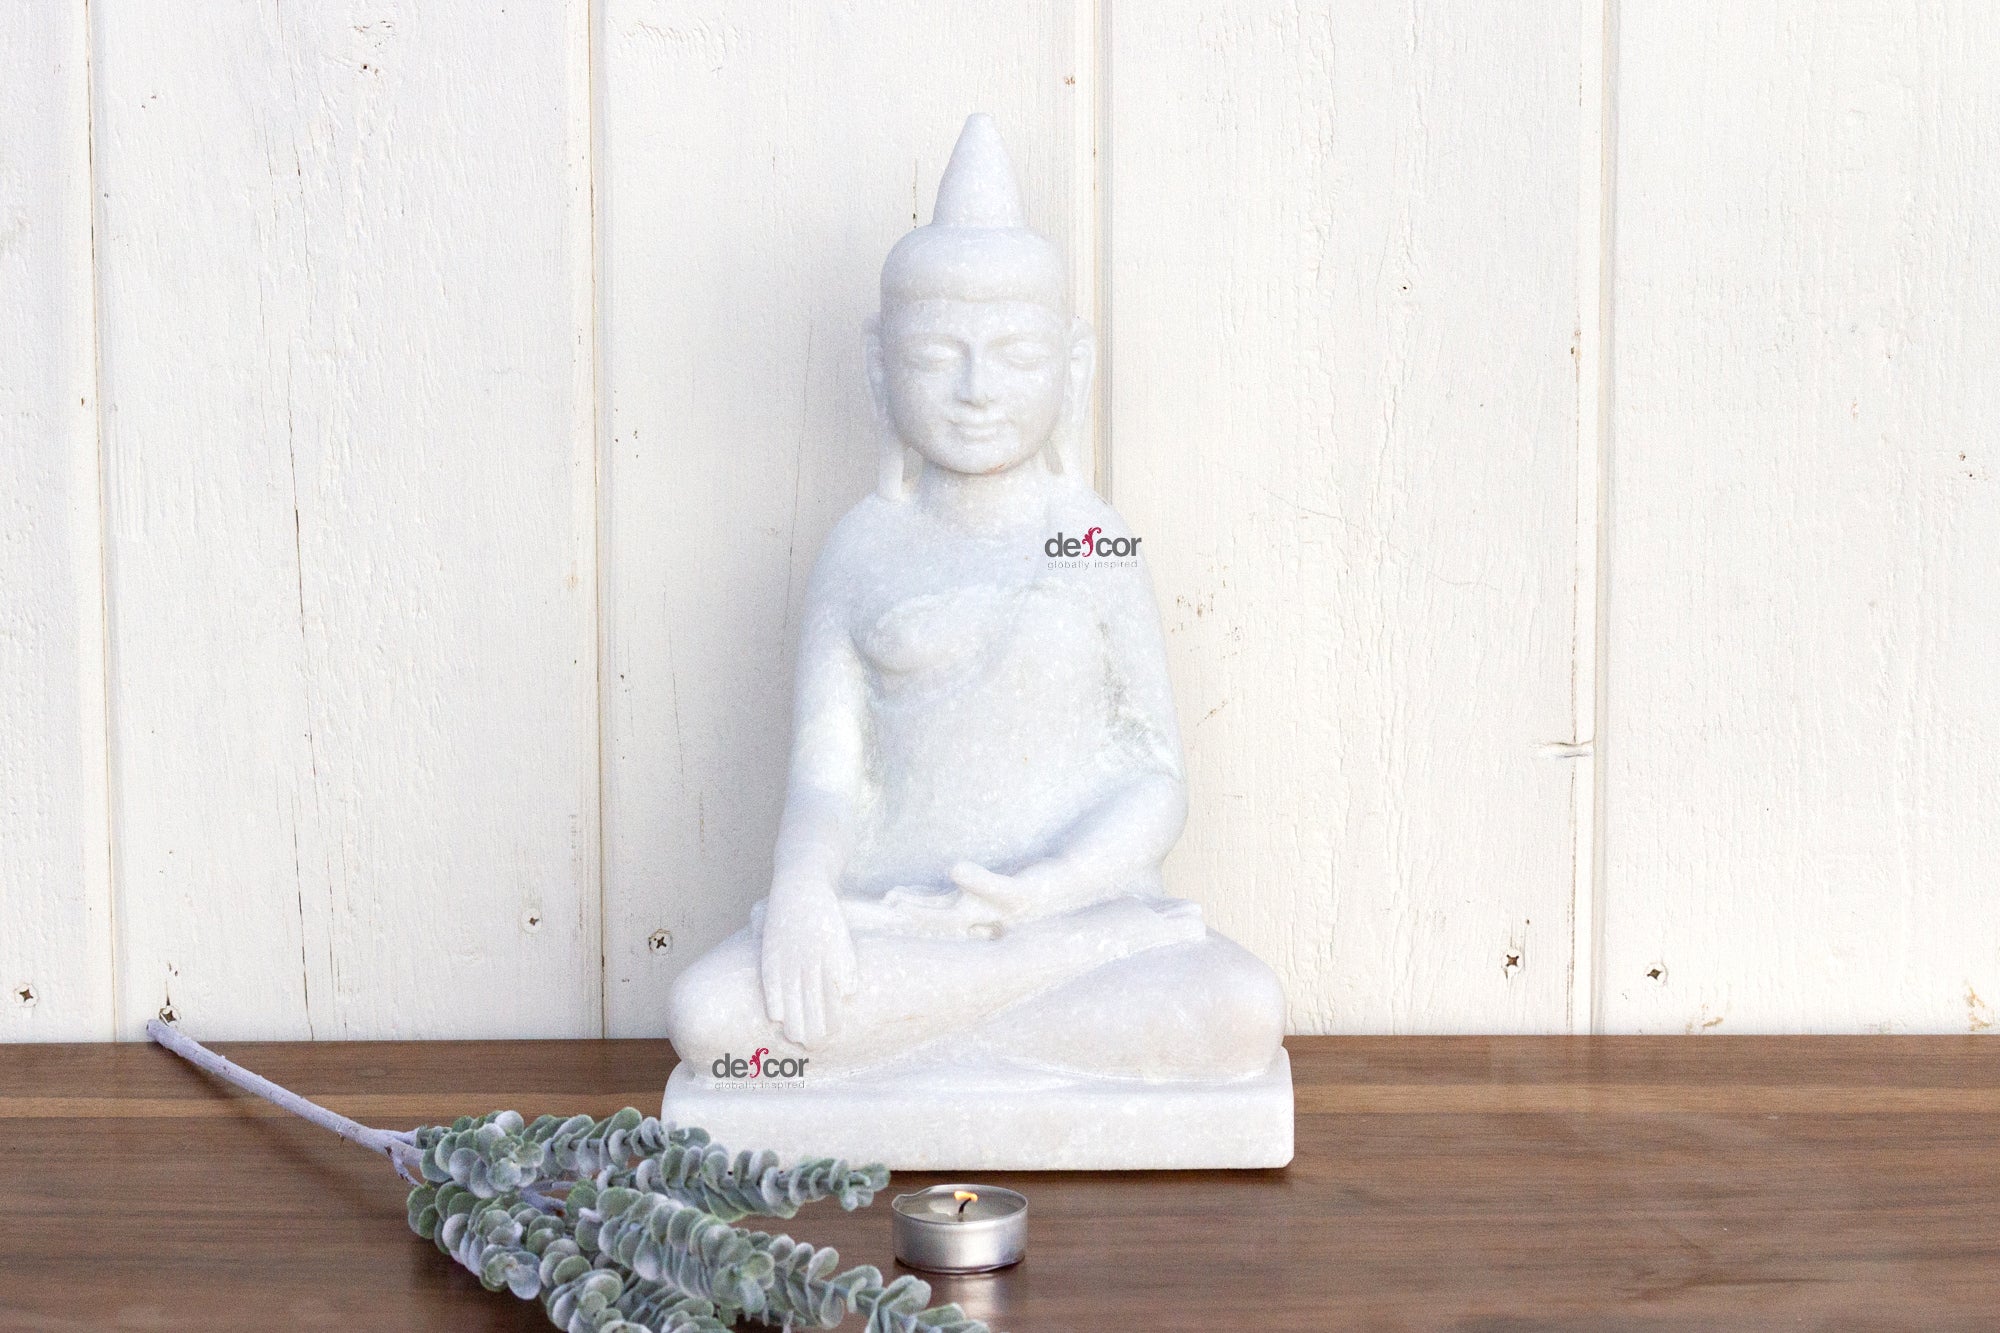 DE-COR | Ispirazione globale, Buddha bianco birmano in stile Shan (commercio)